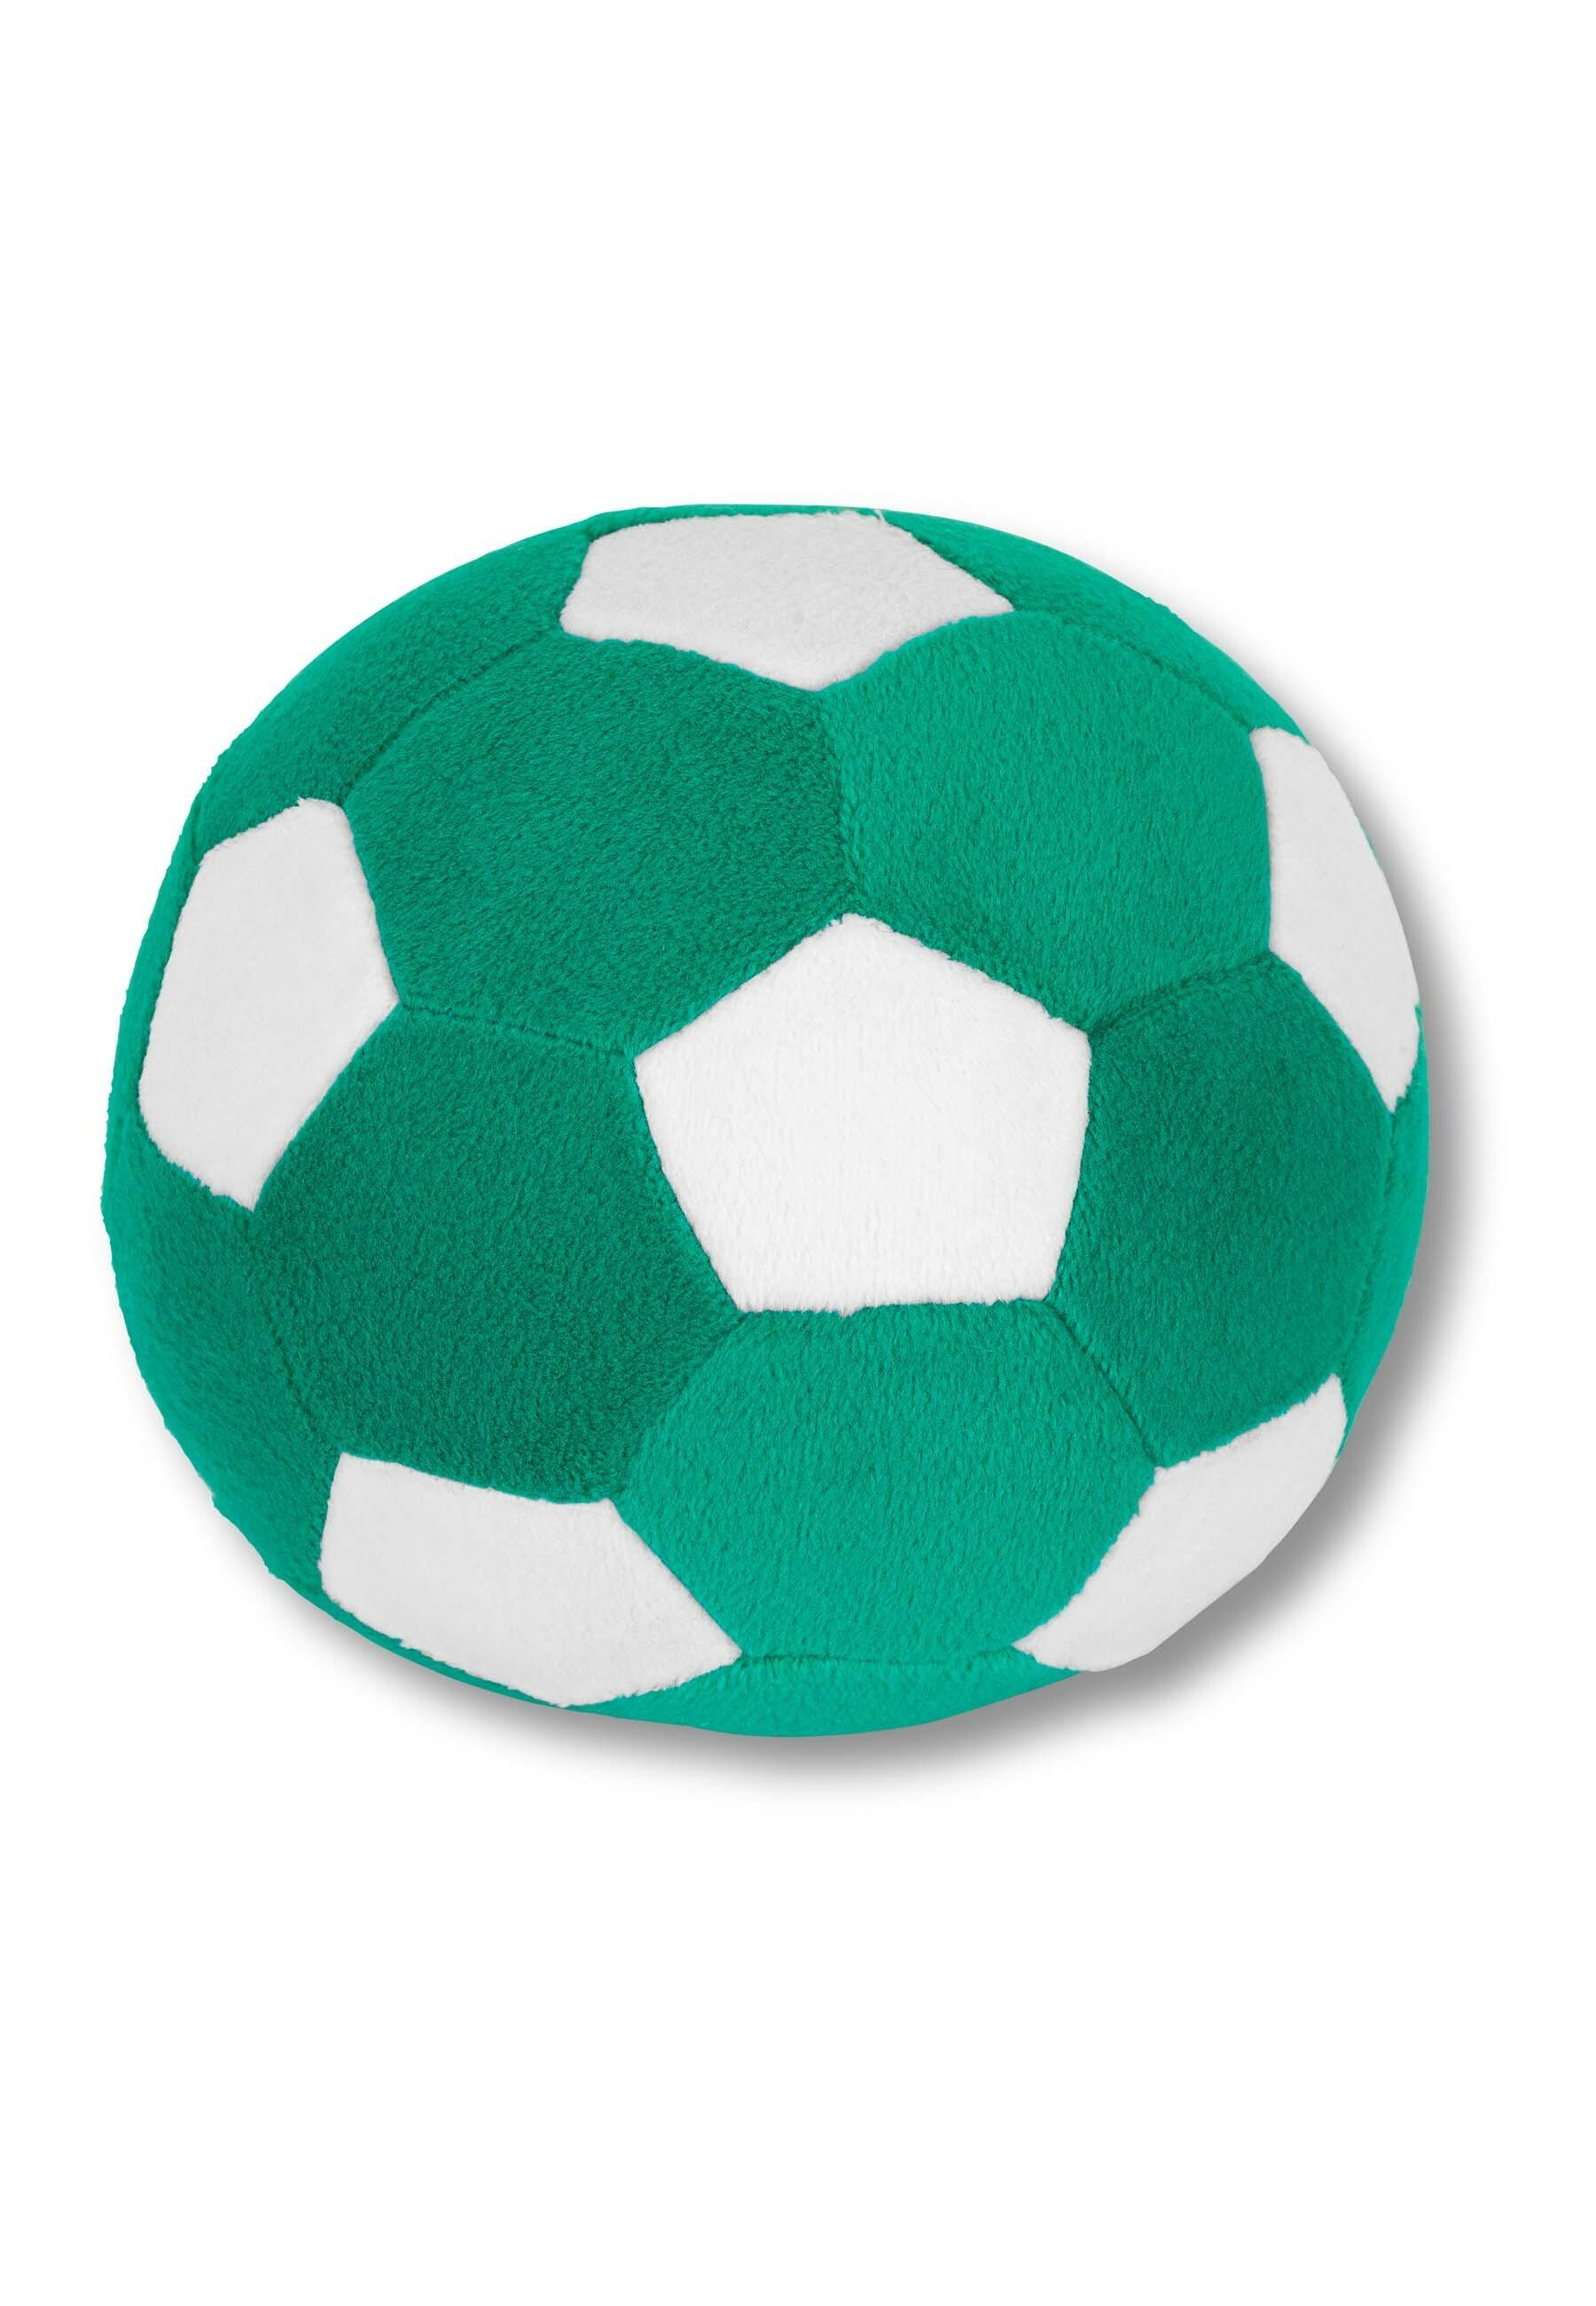 Sterntaler® Spielball Ball grün/weiß, Spielball - Baby Ball, farbig im  Fußball-Design 13 cm - Ball für Babys, Weicher Spielball mit weißen Flecken  und eingesetzter Rassel - Regt Babys zu den ersten Spielbewegungen an